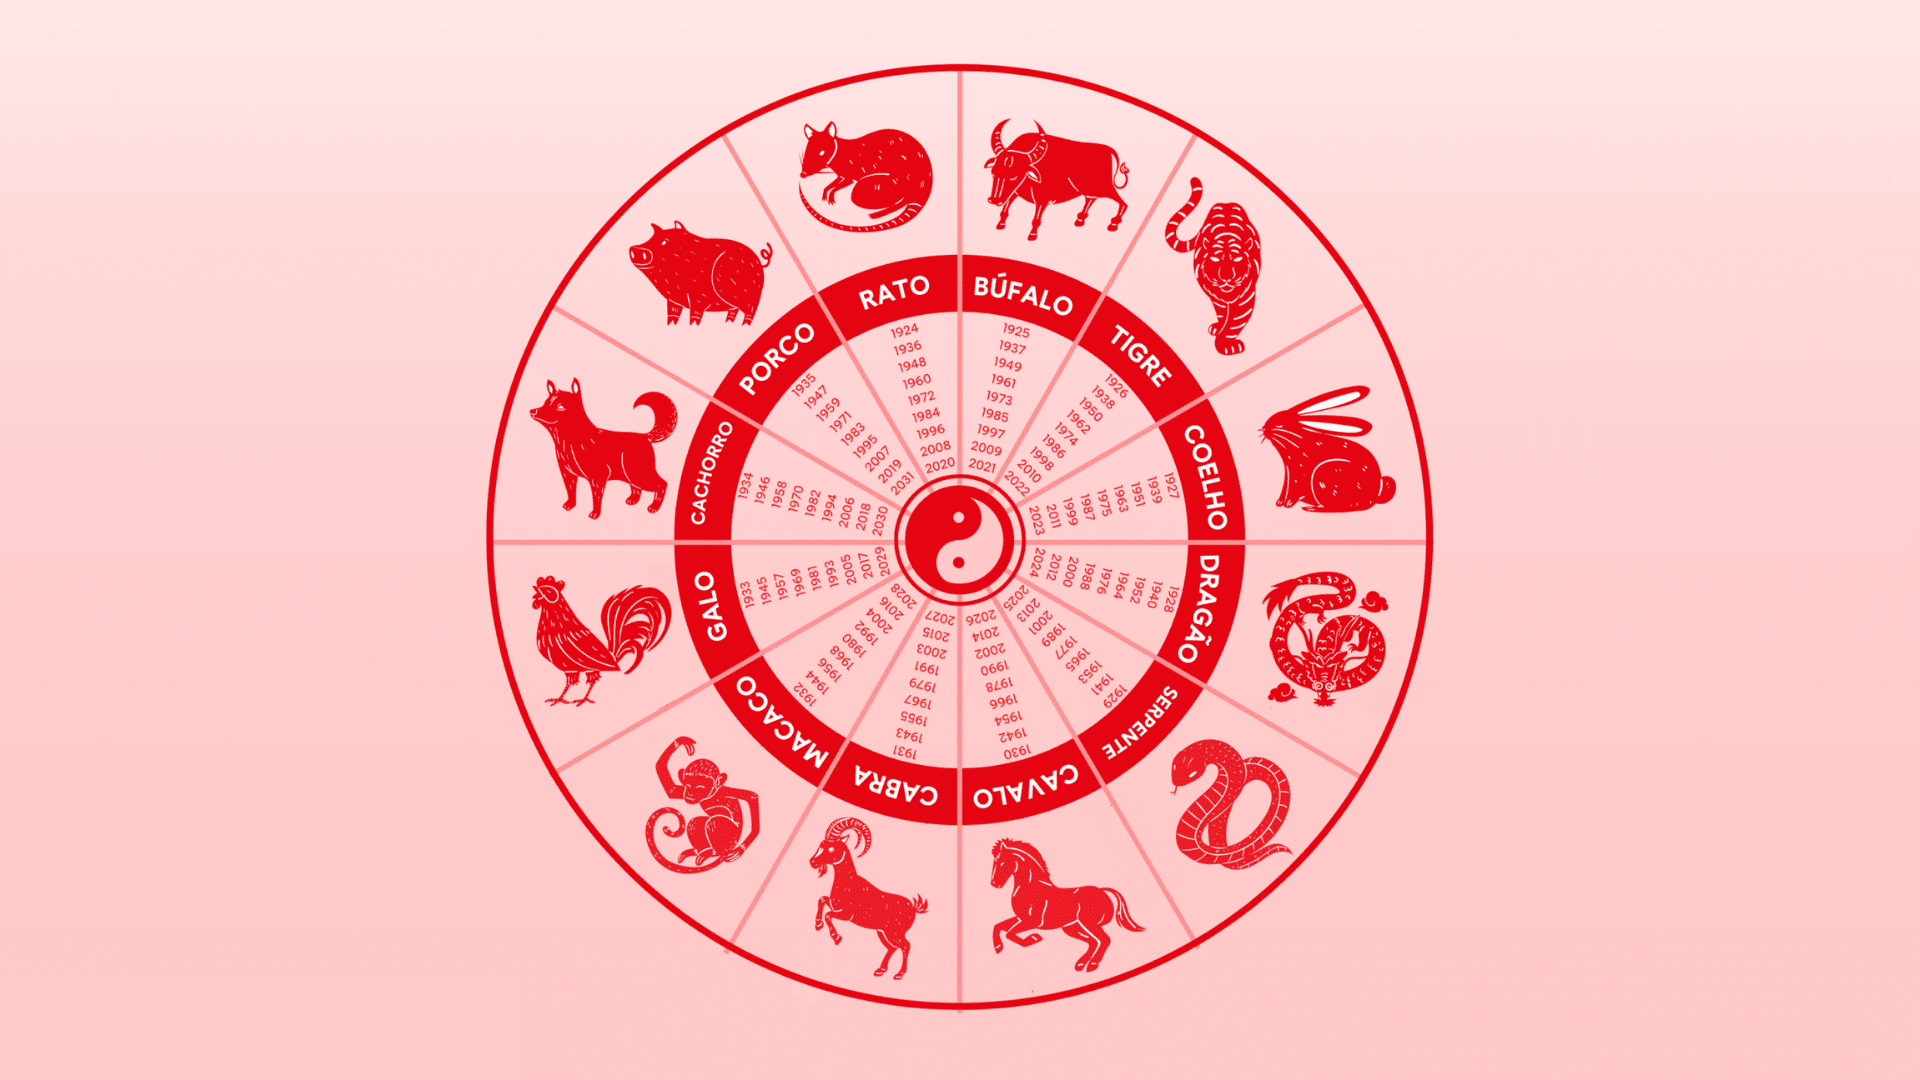 Das chinesische Tierkreiszeichen bestätigt 3 Zeichen, die in den kommenden Tagen auf beruflicher Ebene gute Leistungen erbringen sollen